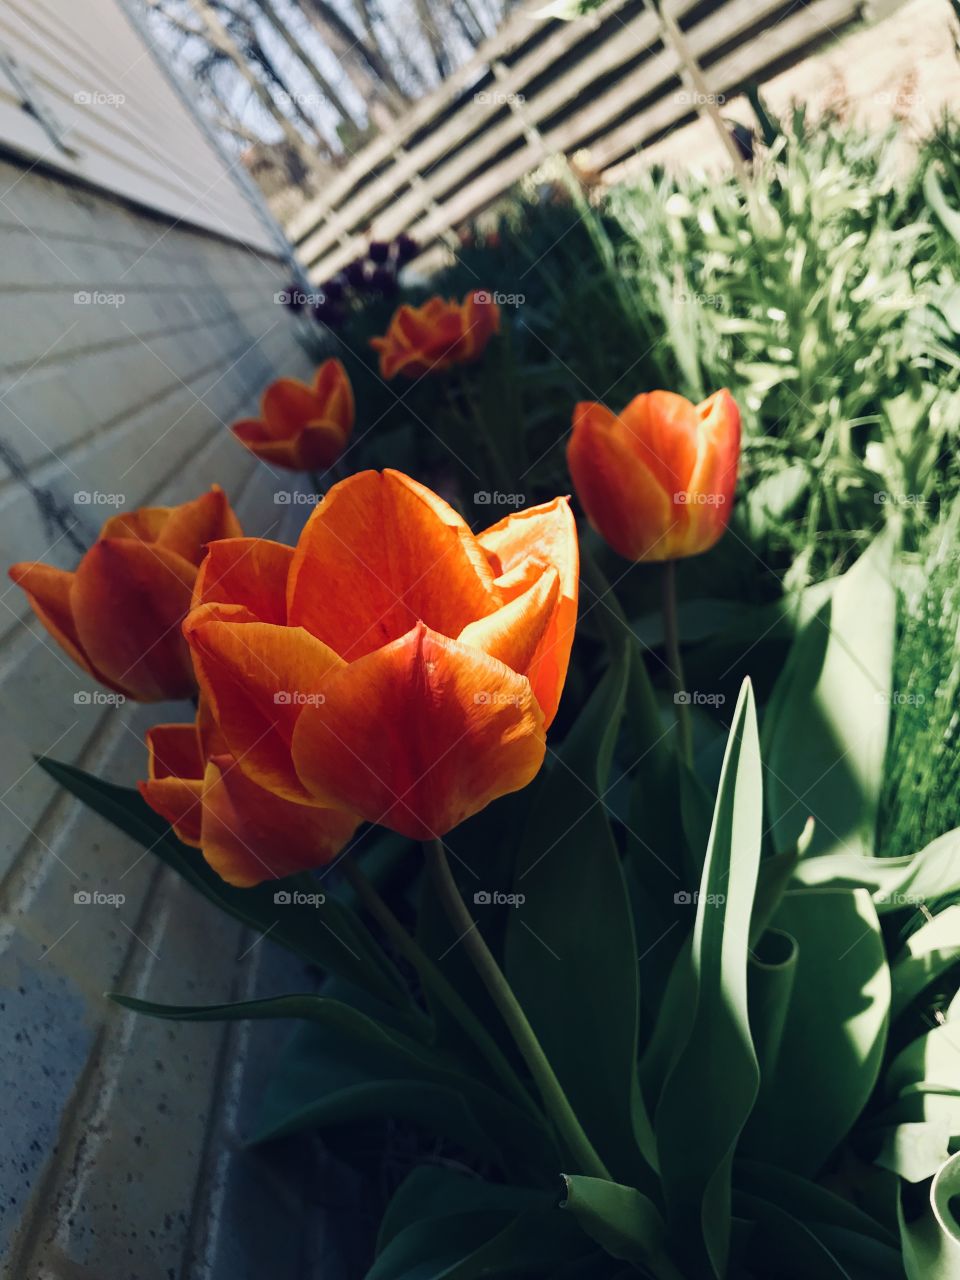 Beautiful orange tulips basking in the sun.